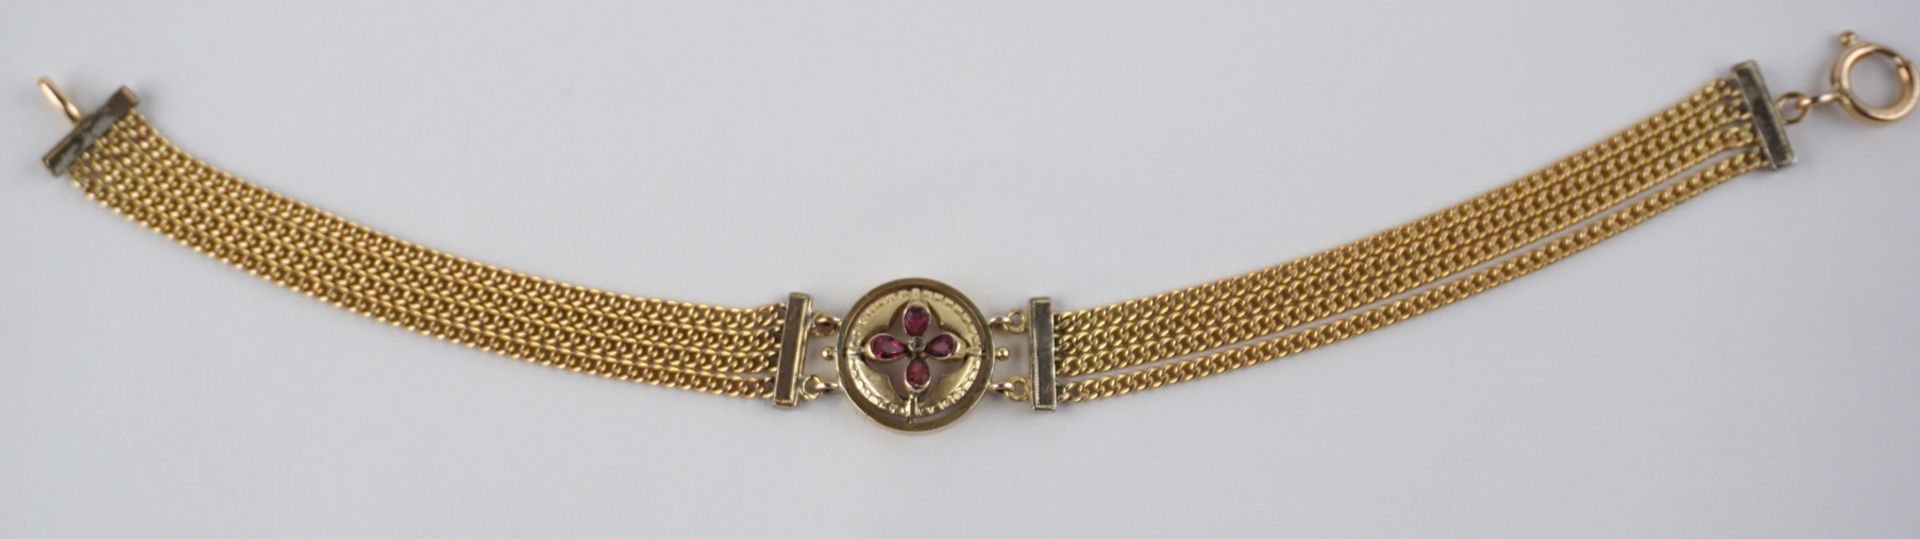 Bracelet with stone set, Art Nouveau c. 1910 - Image 2 of 3